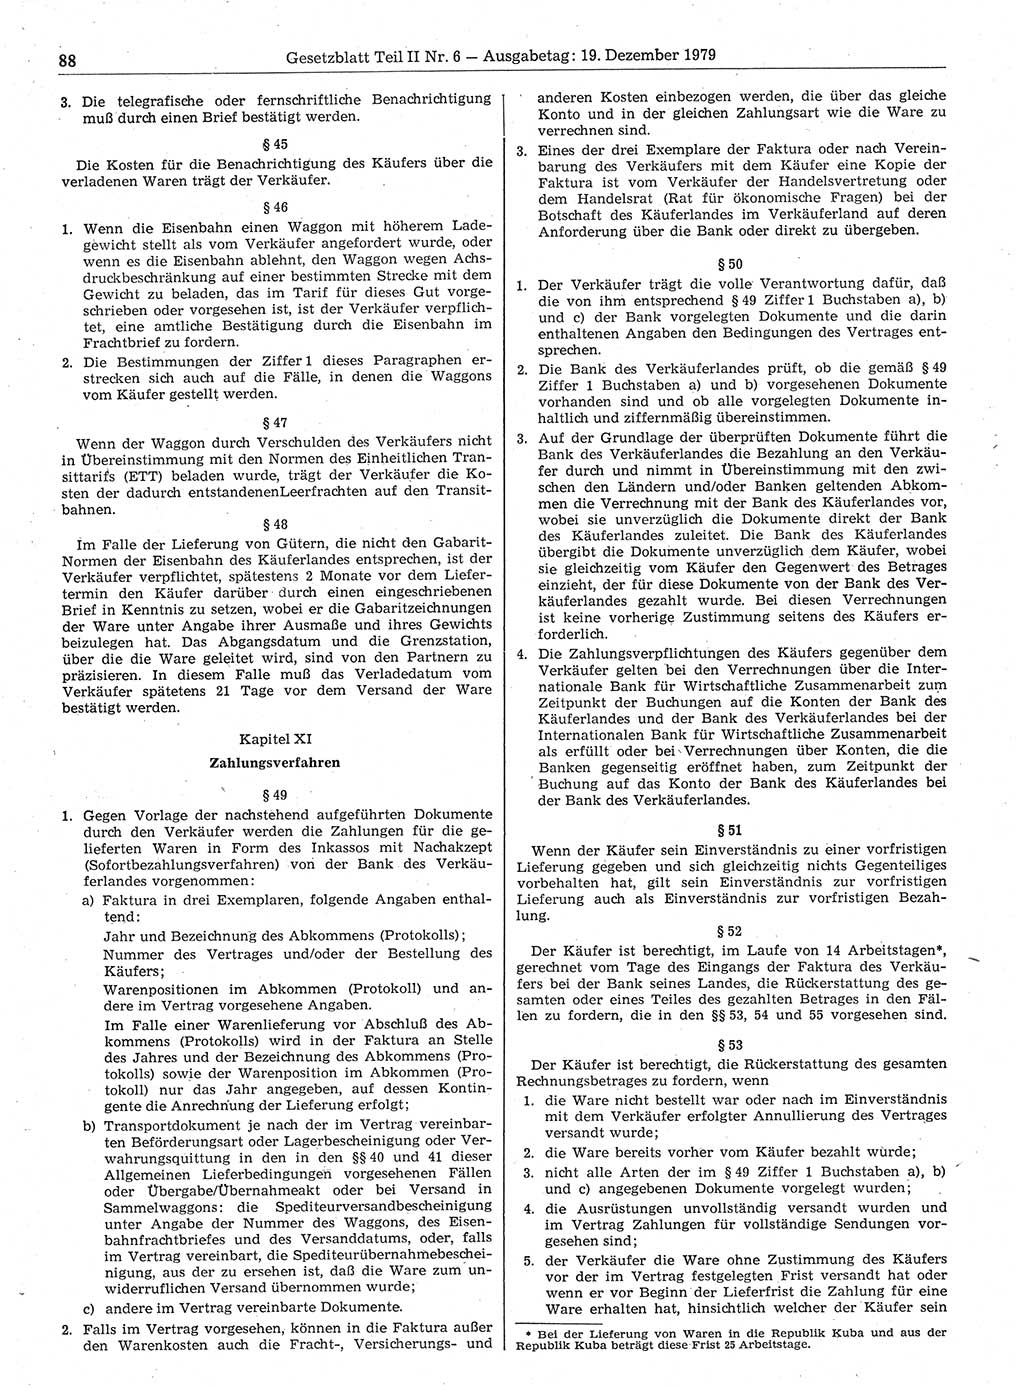 Gesetzblatt (GBl.) der Deutschen Demokratischen Republik (DDR) Teil ⅠⅠ 1979, Seite 88 (GBl. DDR ⅠⅠ 1979, S. 88)